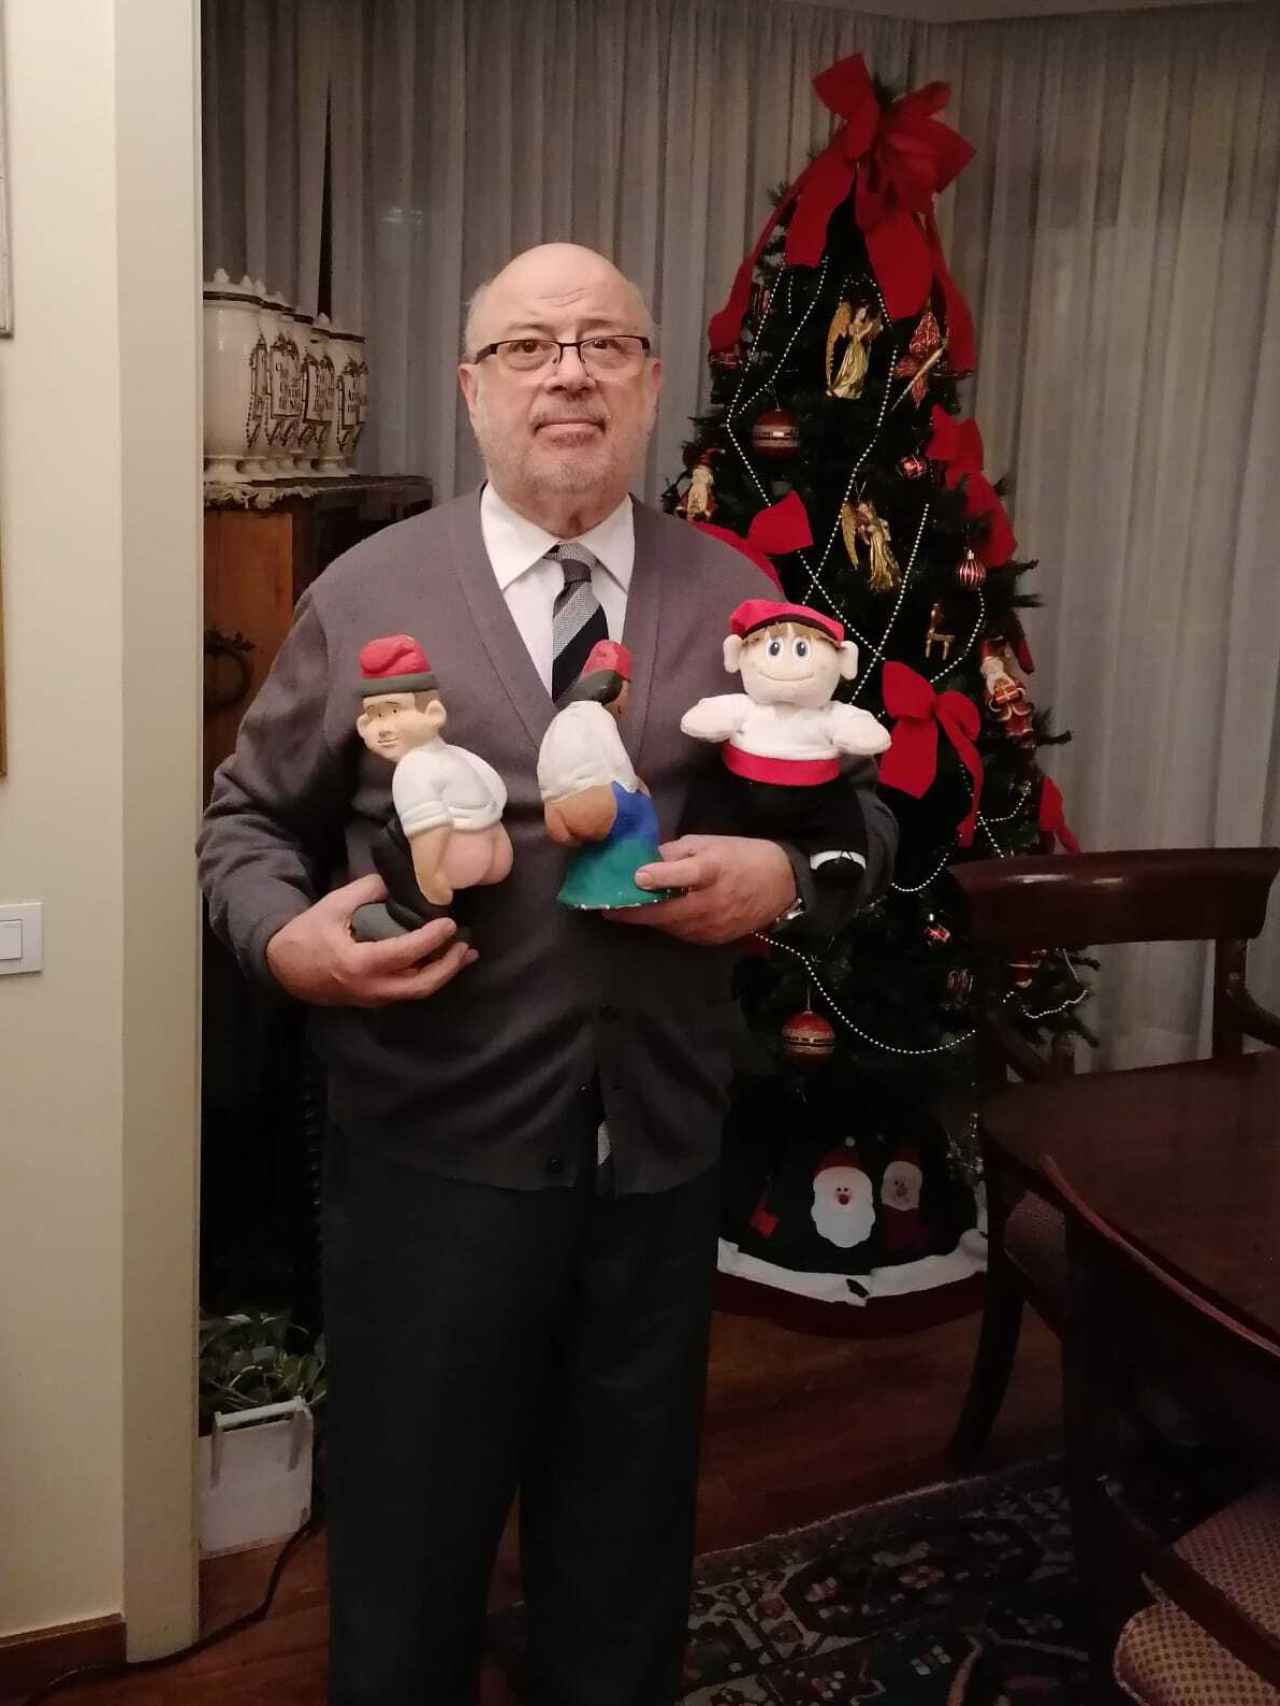 Xabier Añoveros, posando junto algunas figuras y el árbol de Navidad, en su casa.